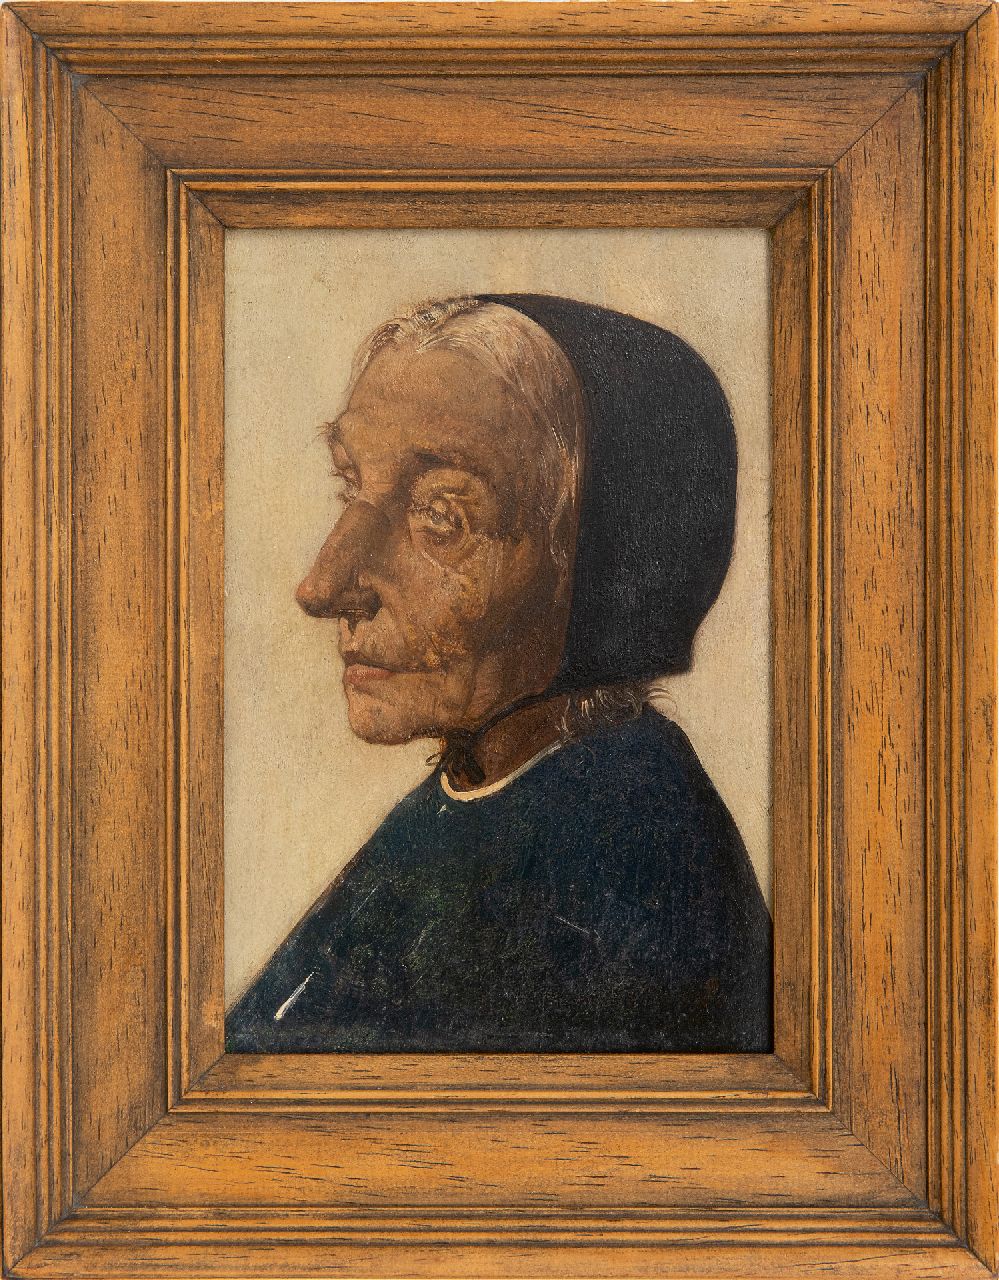 Berg W.H. van den | 'Willem' Hendrik van den Berg, Kopje van oude vrouw, olieverf op paneel 16,4 x 10,7 cm, gesigneerd rechtsonder